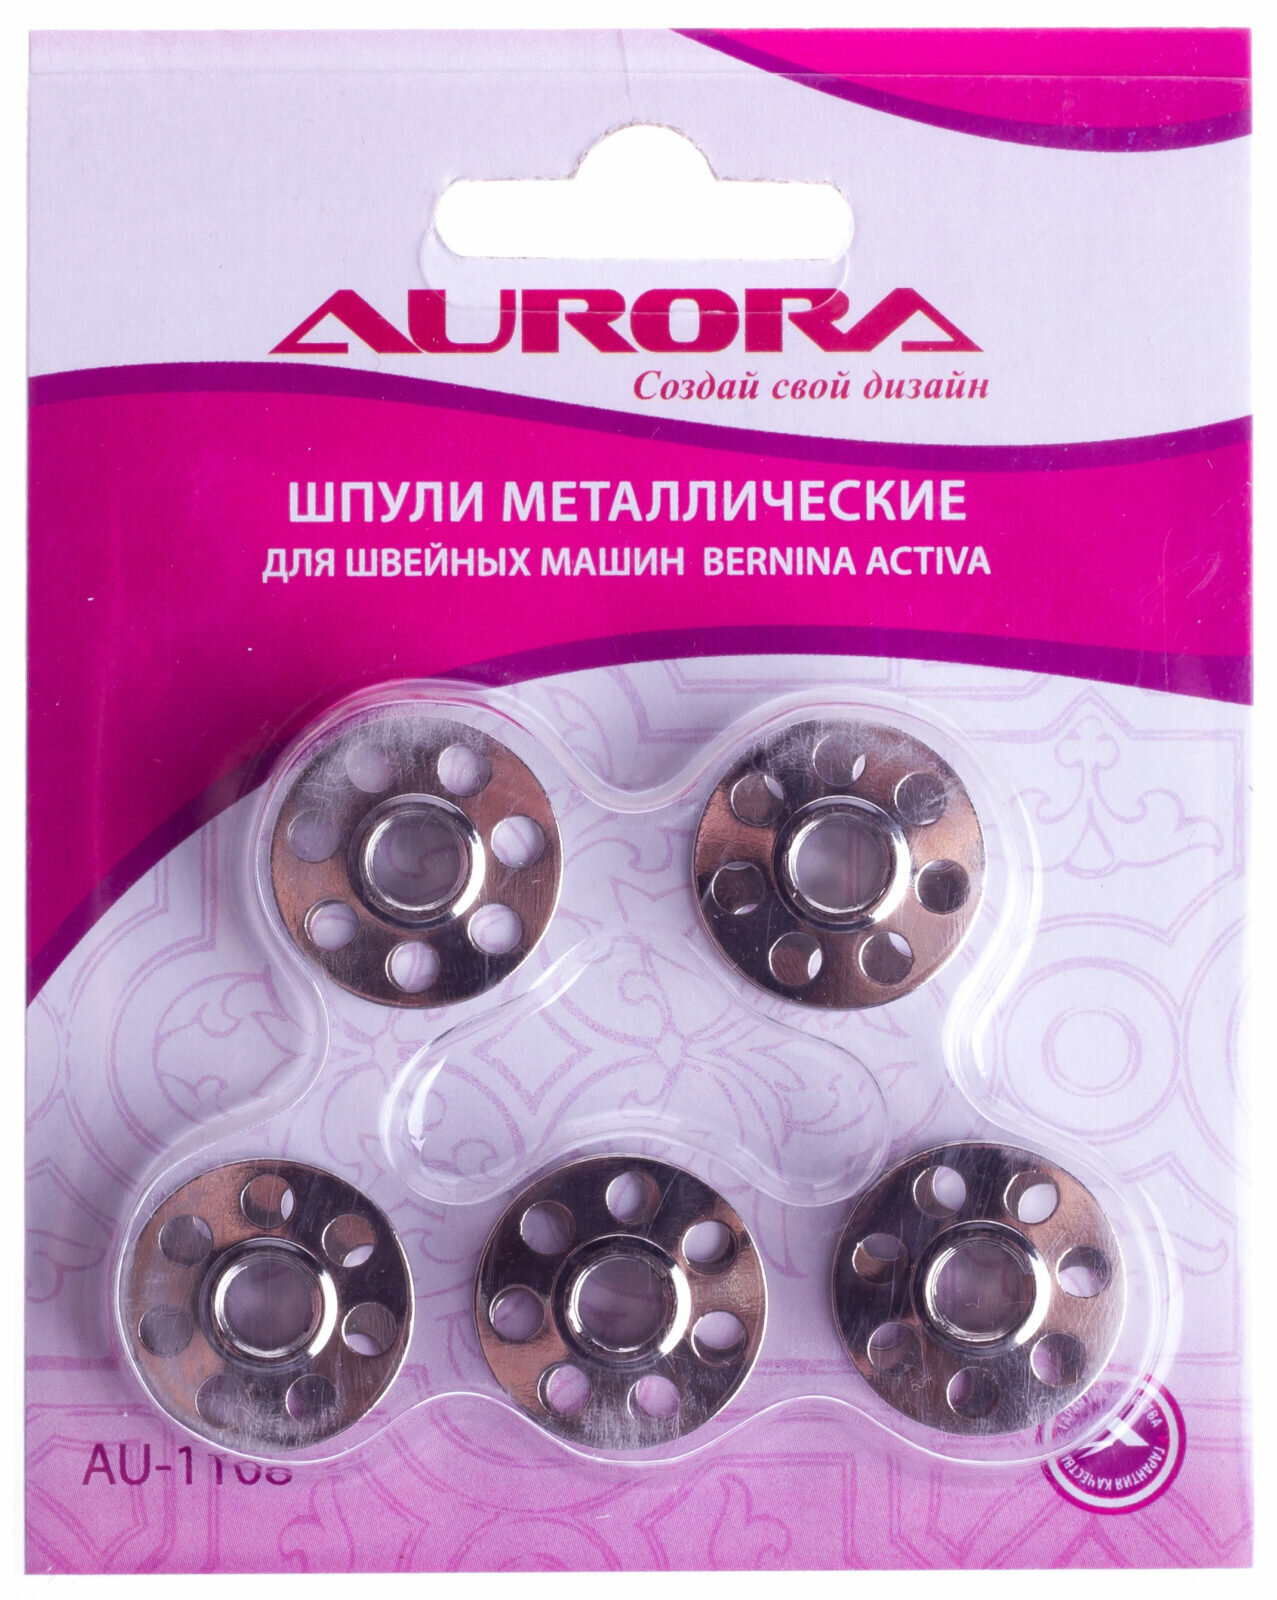 Шпульки для швейных машин Bernina Activa металлические AURORA, 5шт, 1шт